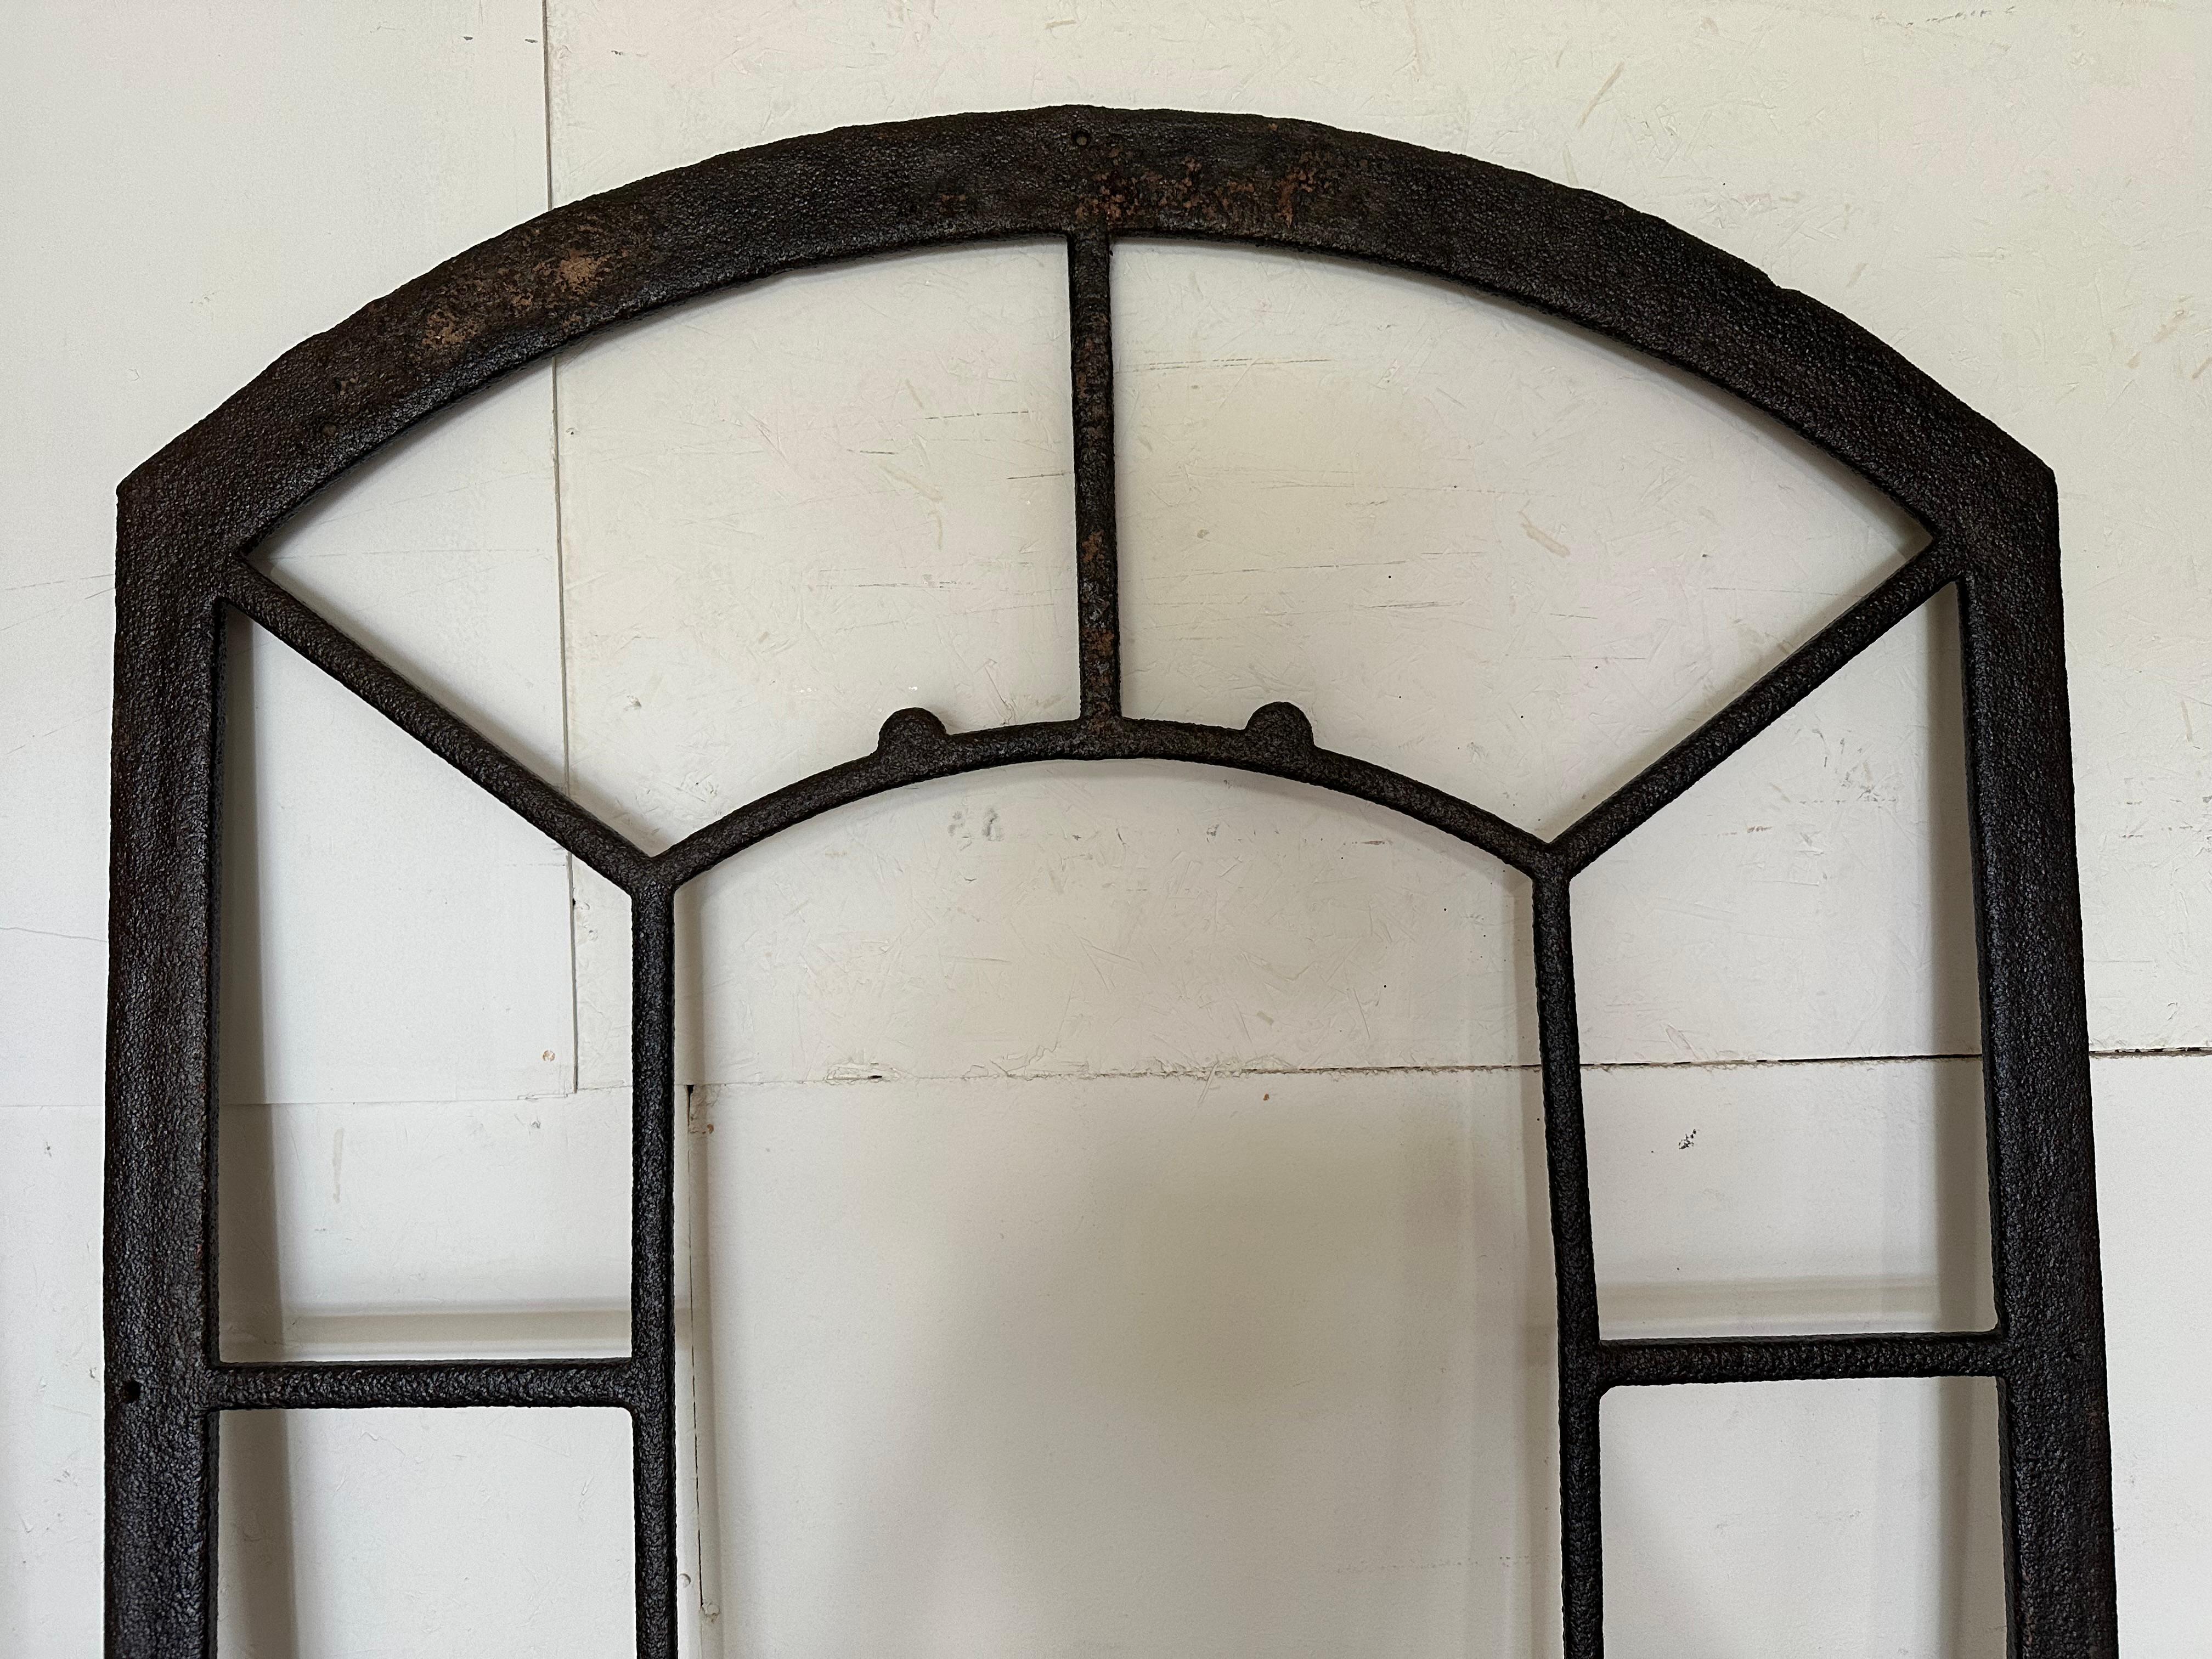 European Antique French Tuileries Orangerie Iron Window or Mirror Frame For Sale